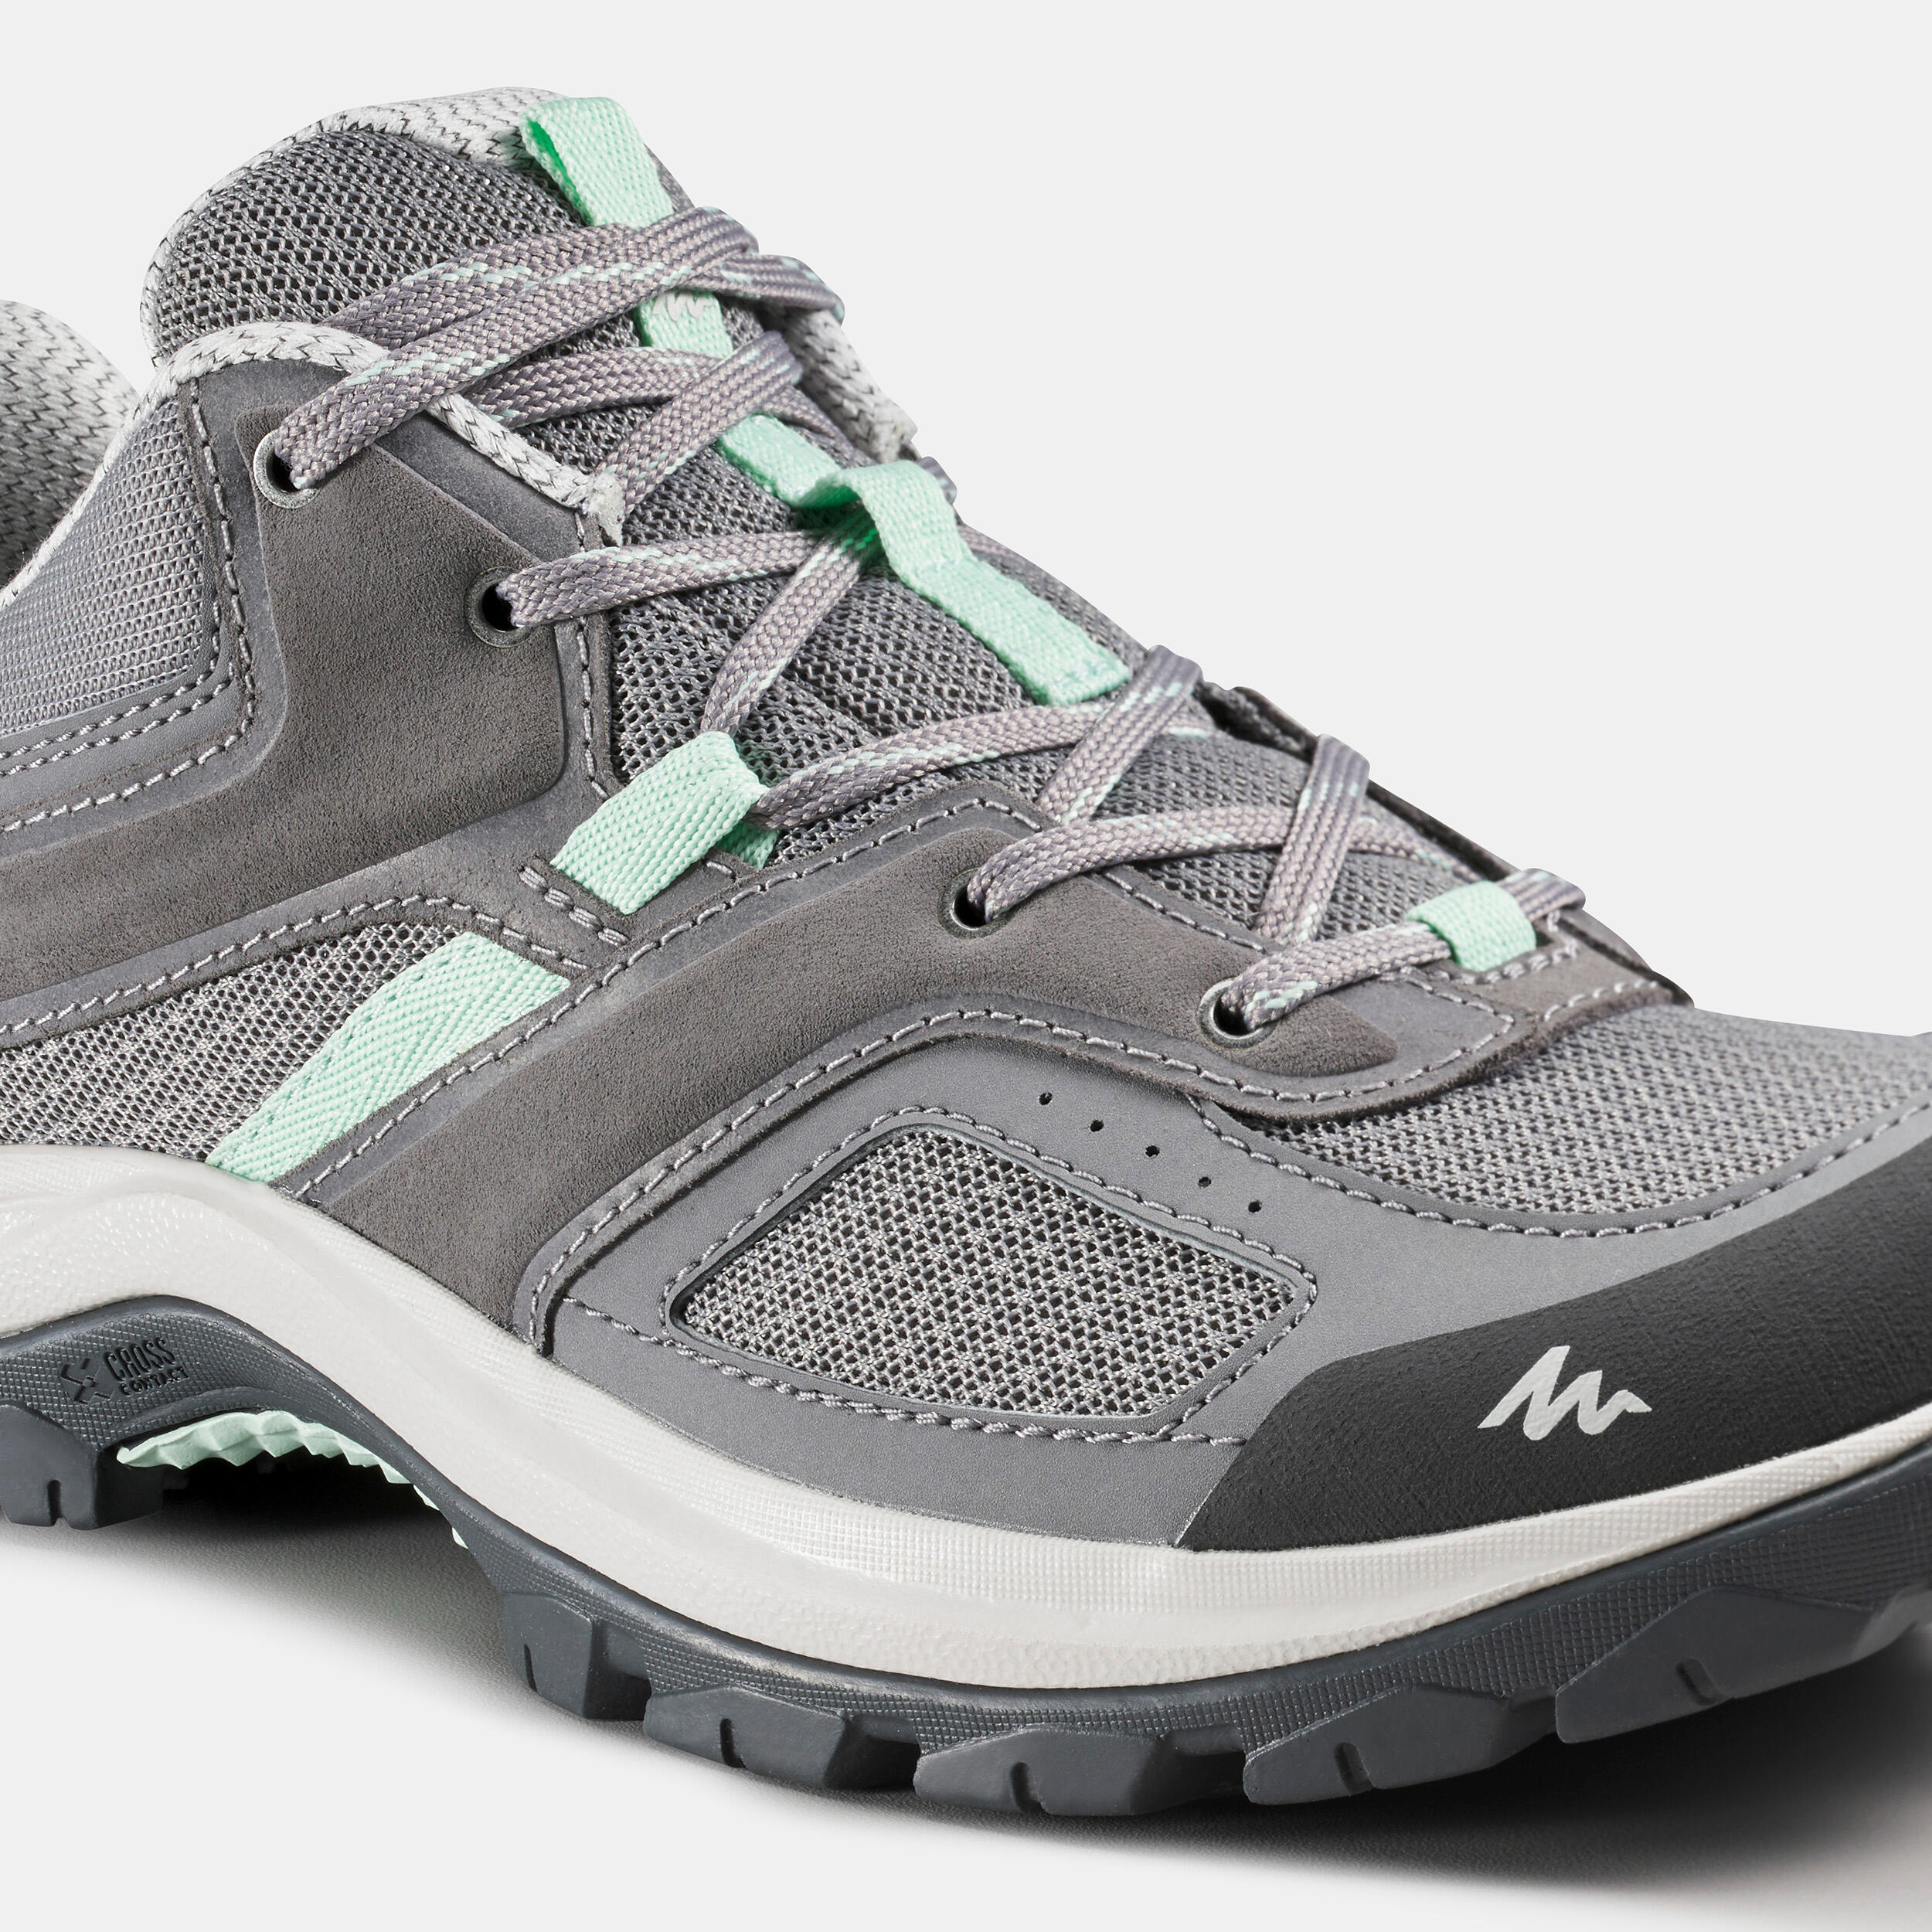 Women's mountain walking shoes - MH100 - Grey/Green 5/6